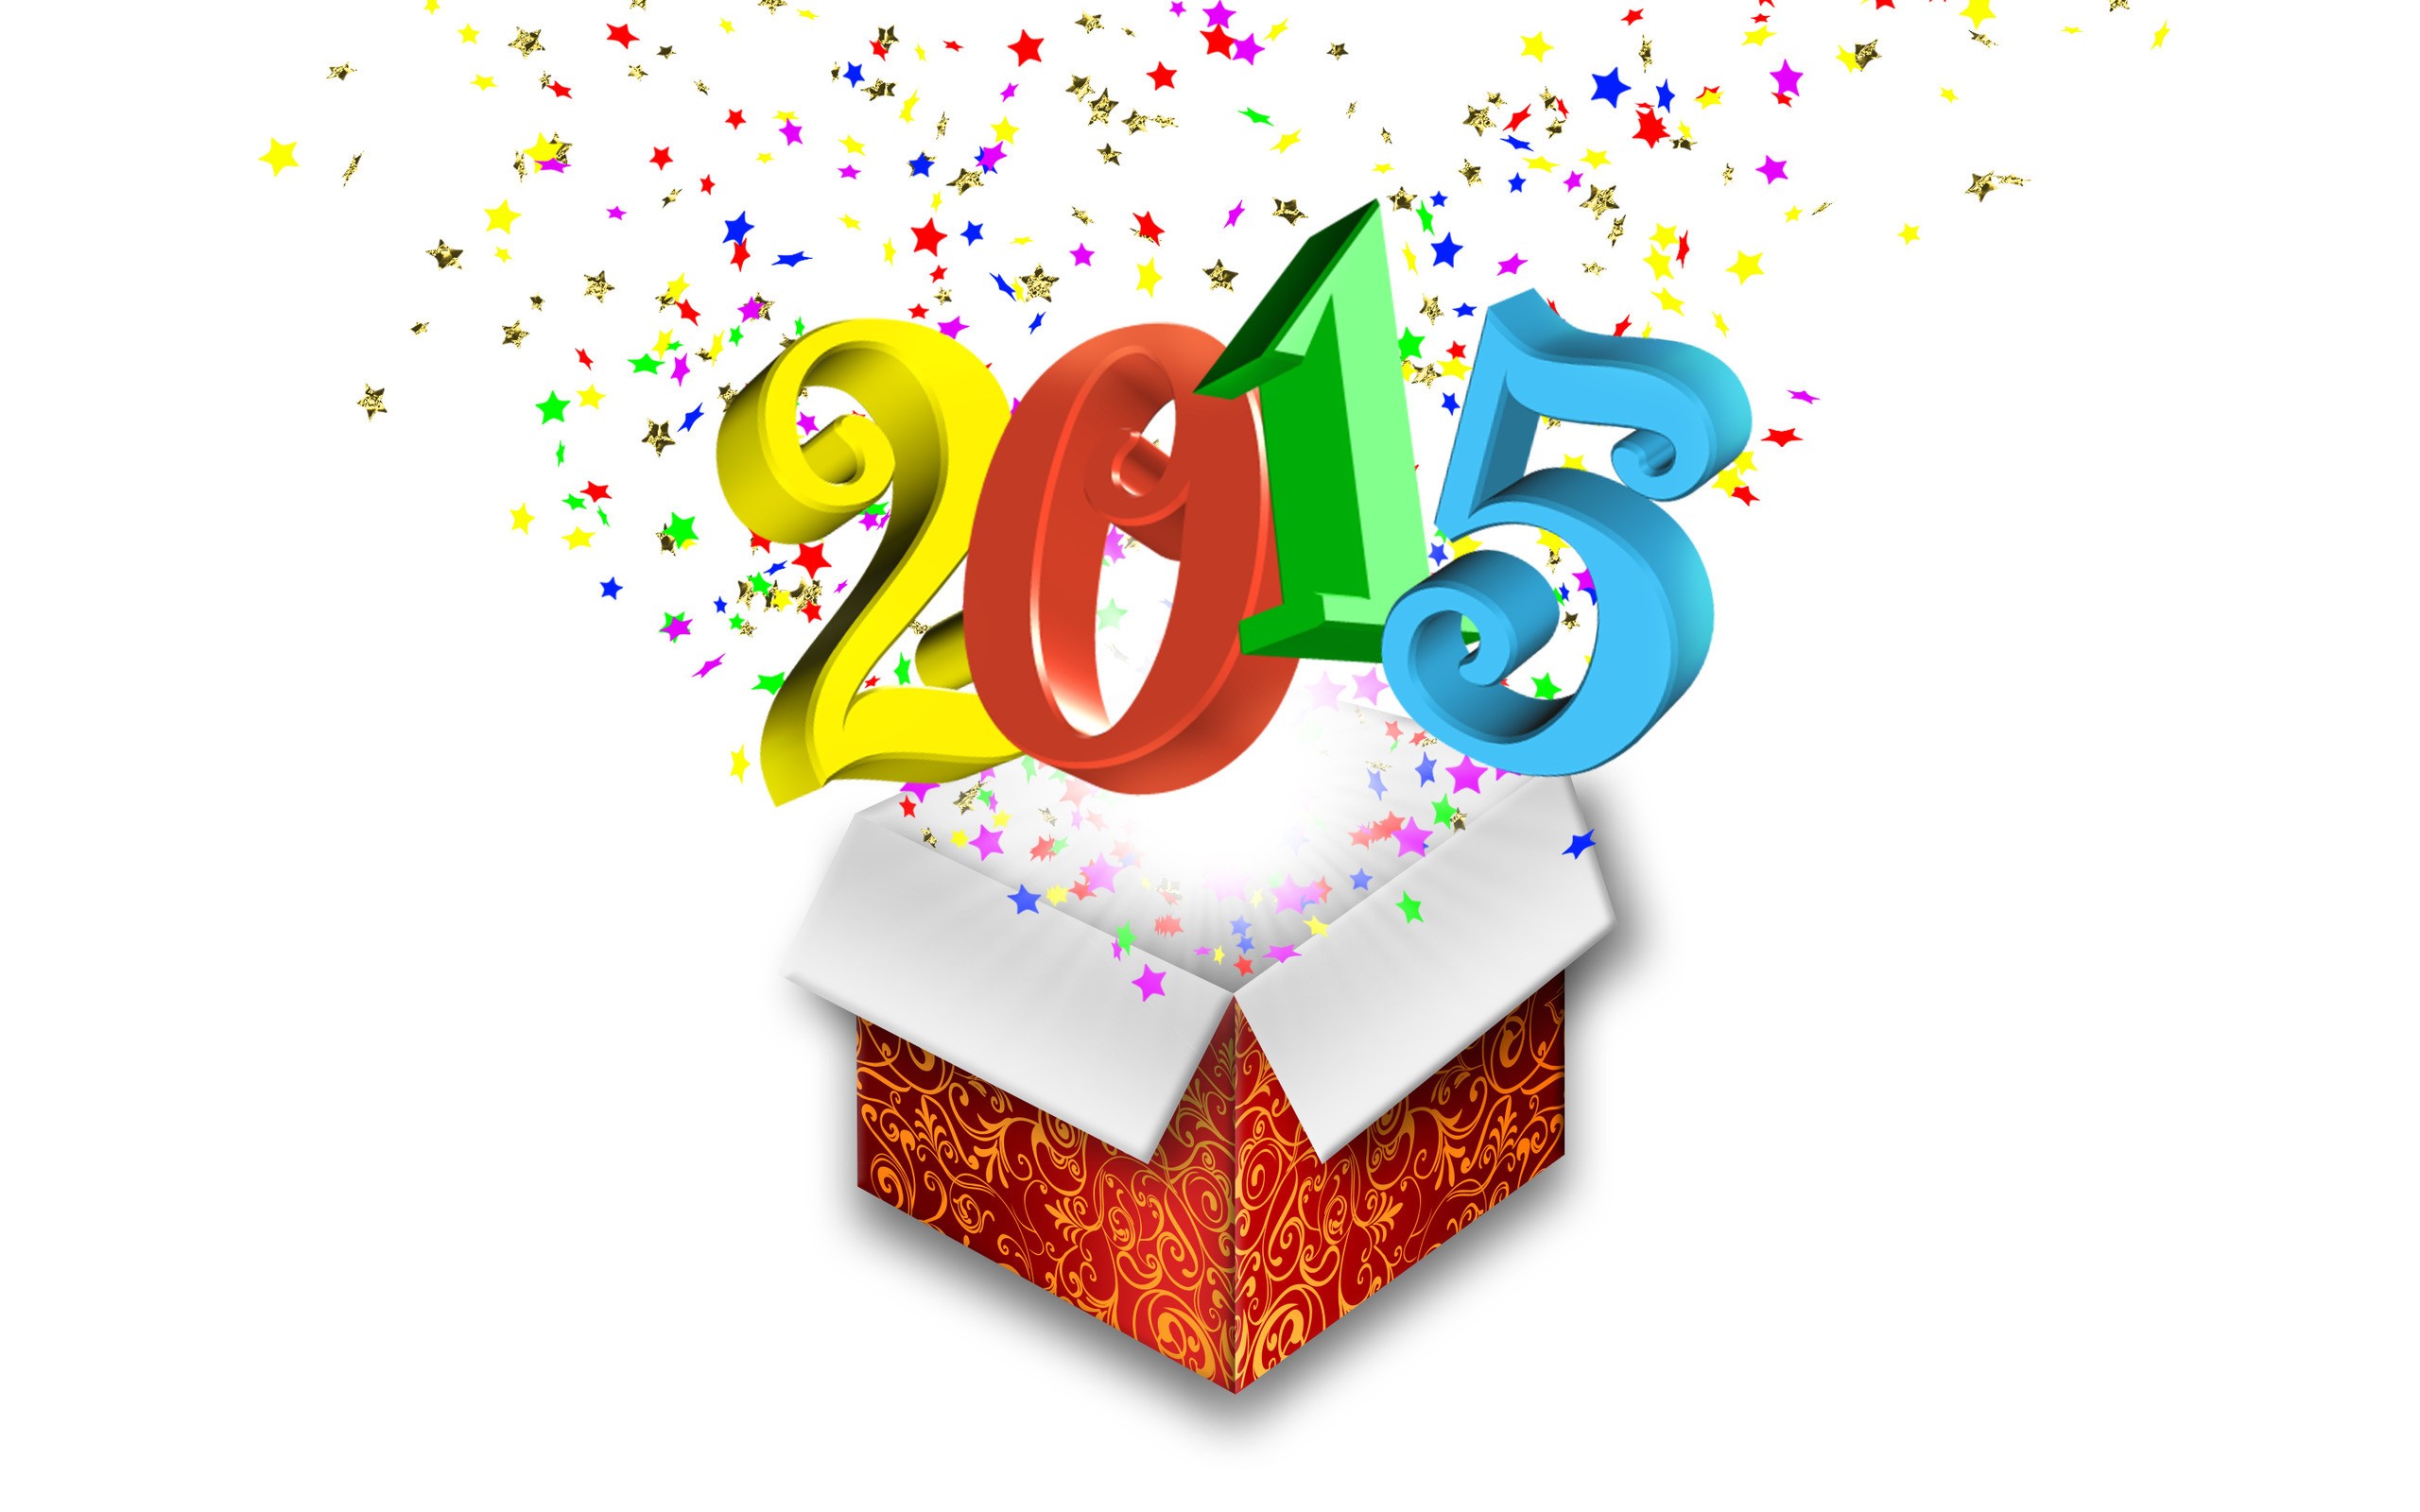 PCデスクトップに新年, ホリデー, 2015年新年画像を無料でダウンロード